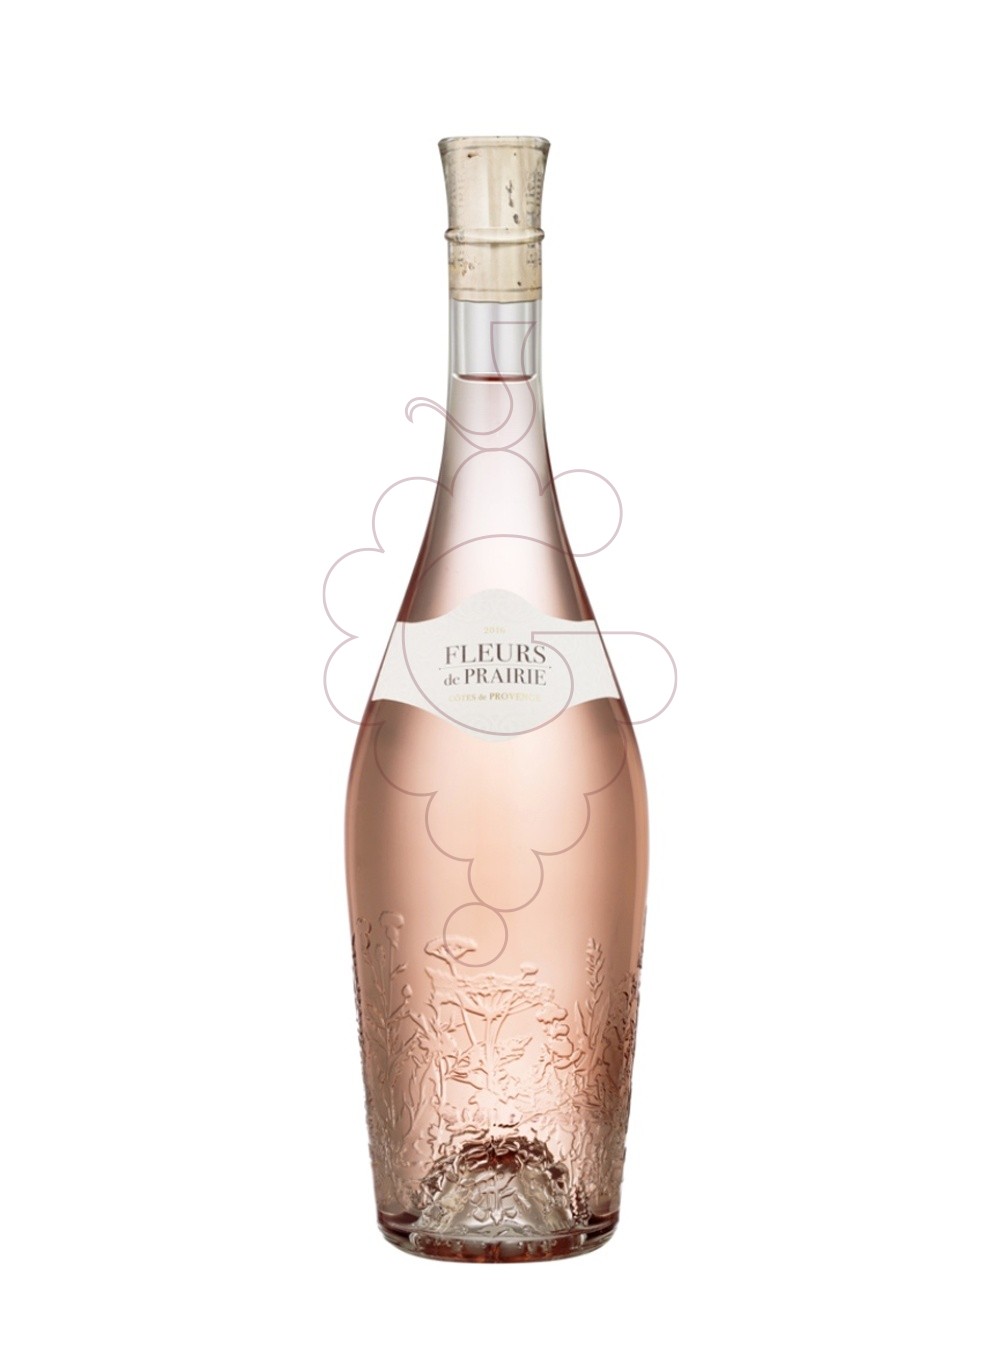 Photo Fleurs de prairie provence ros rosé wine